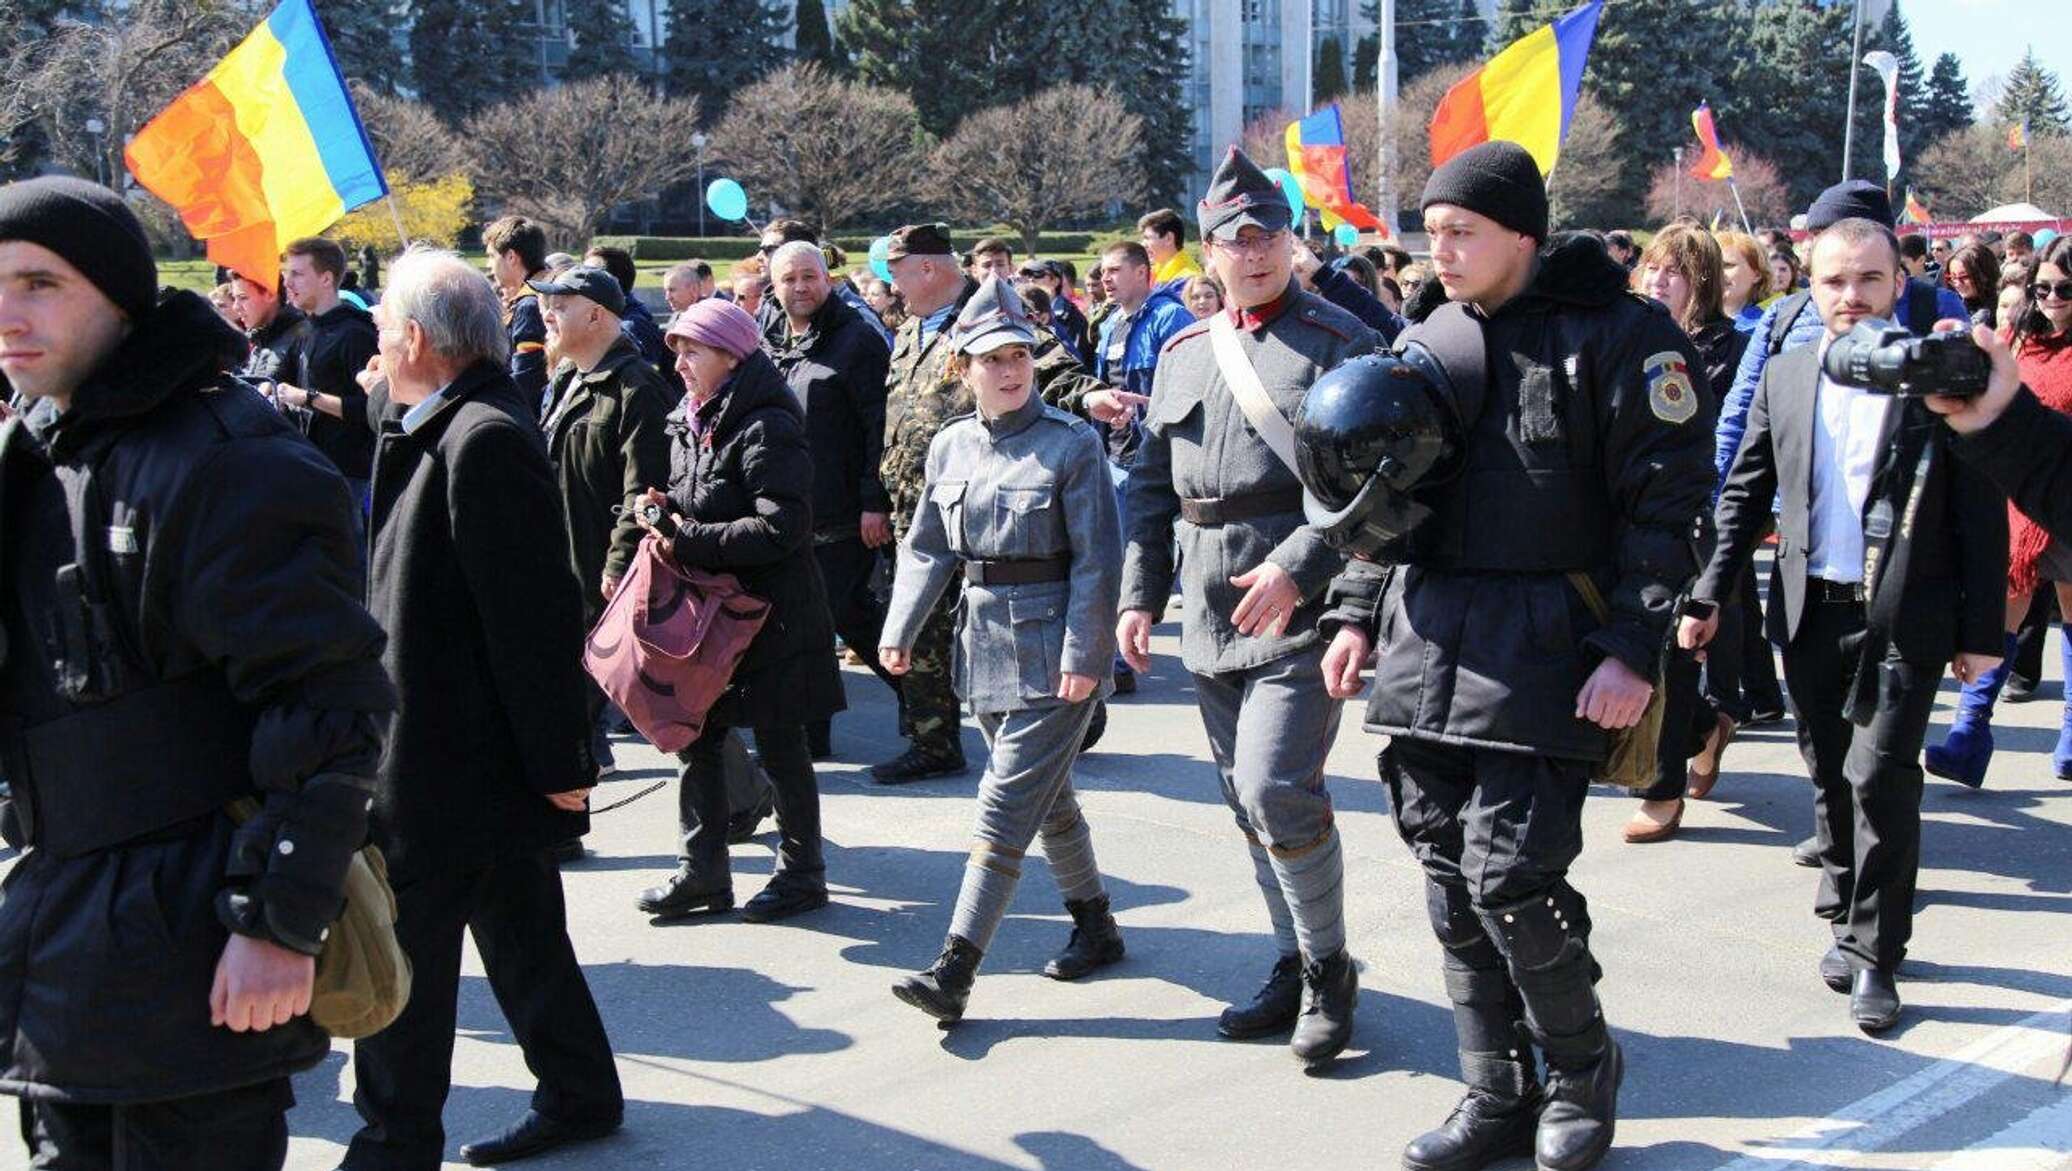 Сделано в молдове. Митинг унионистов в Кишиневе. Молдова марш. Румыния марш.